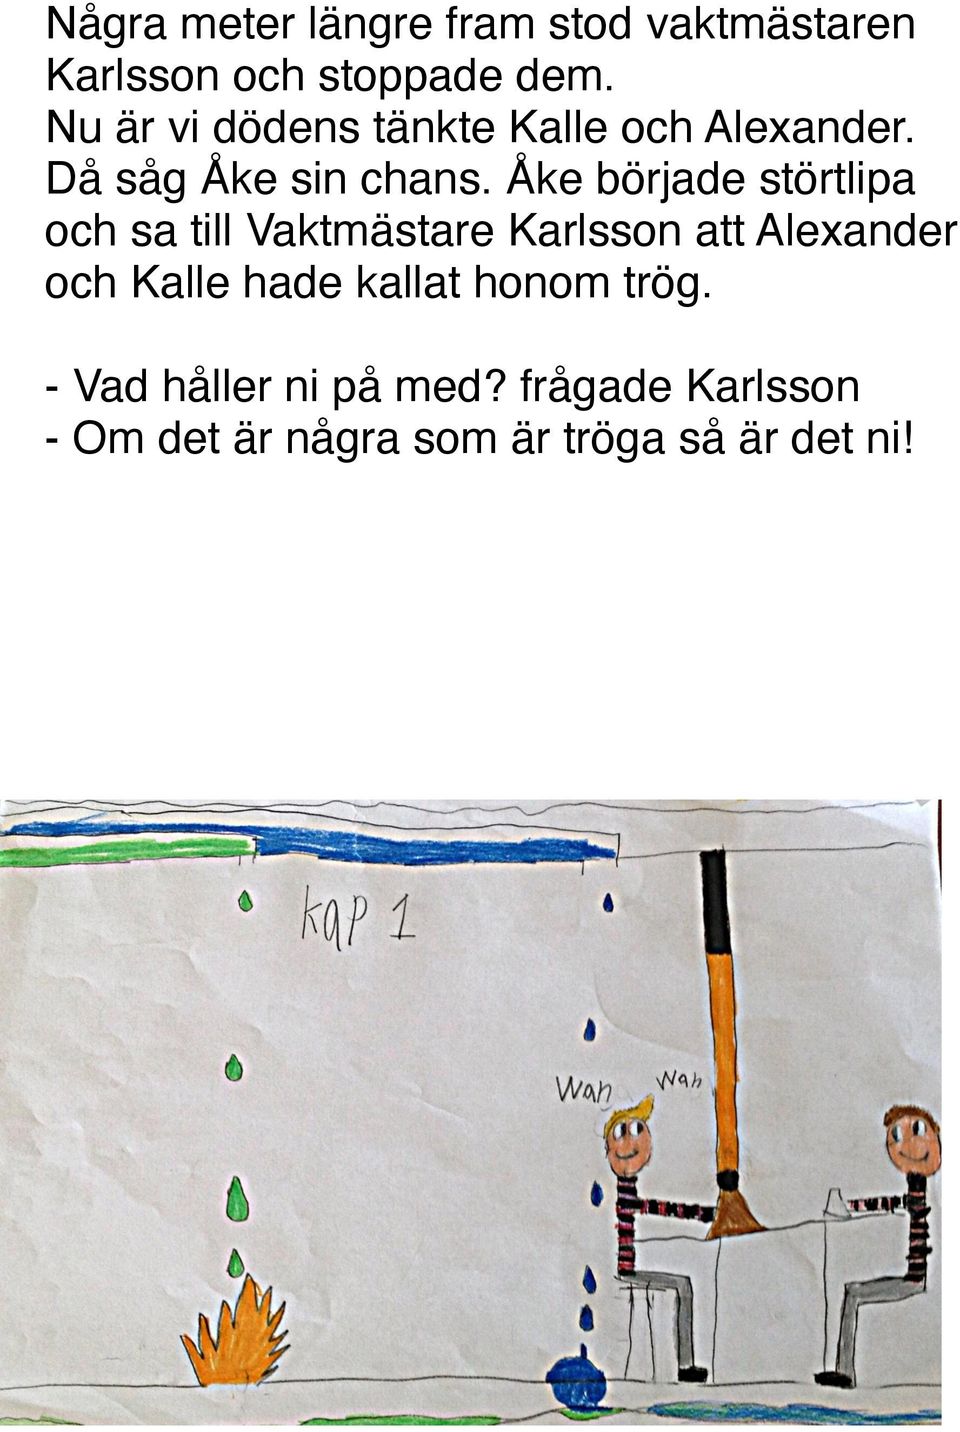 Åke började störtlipa och sa till Vaktmästare Karlsson att Alexander och Kalle